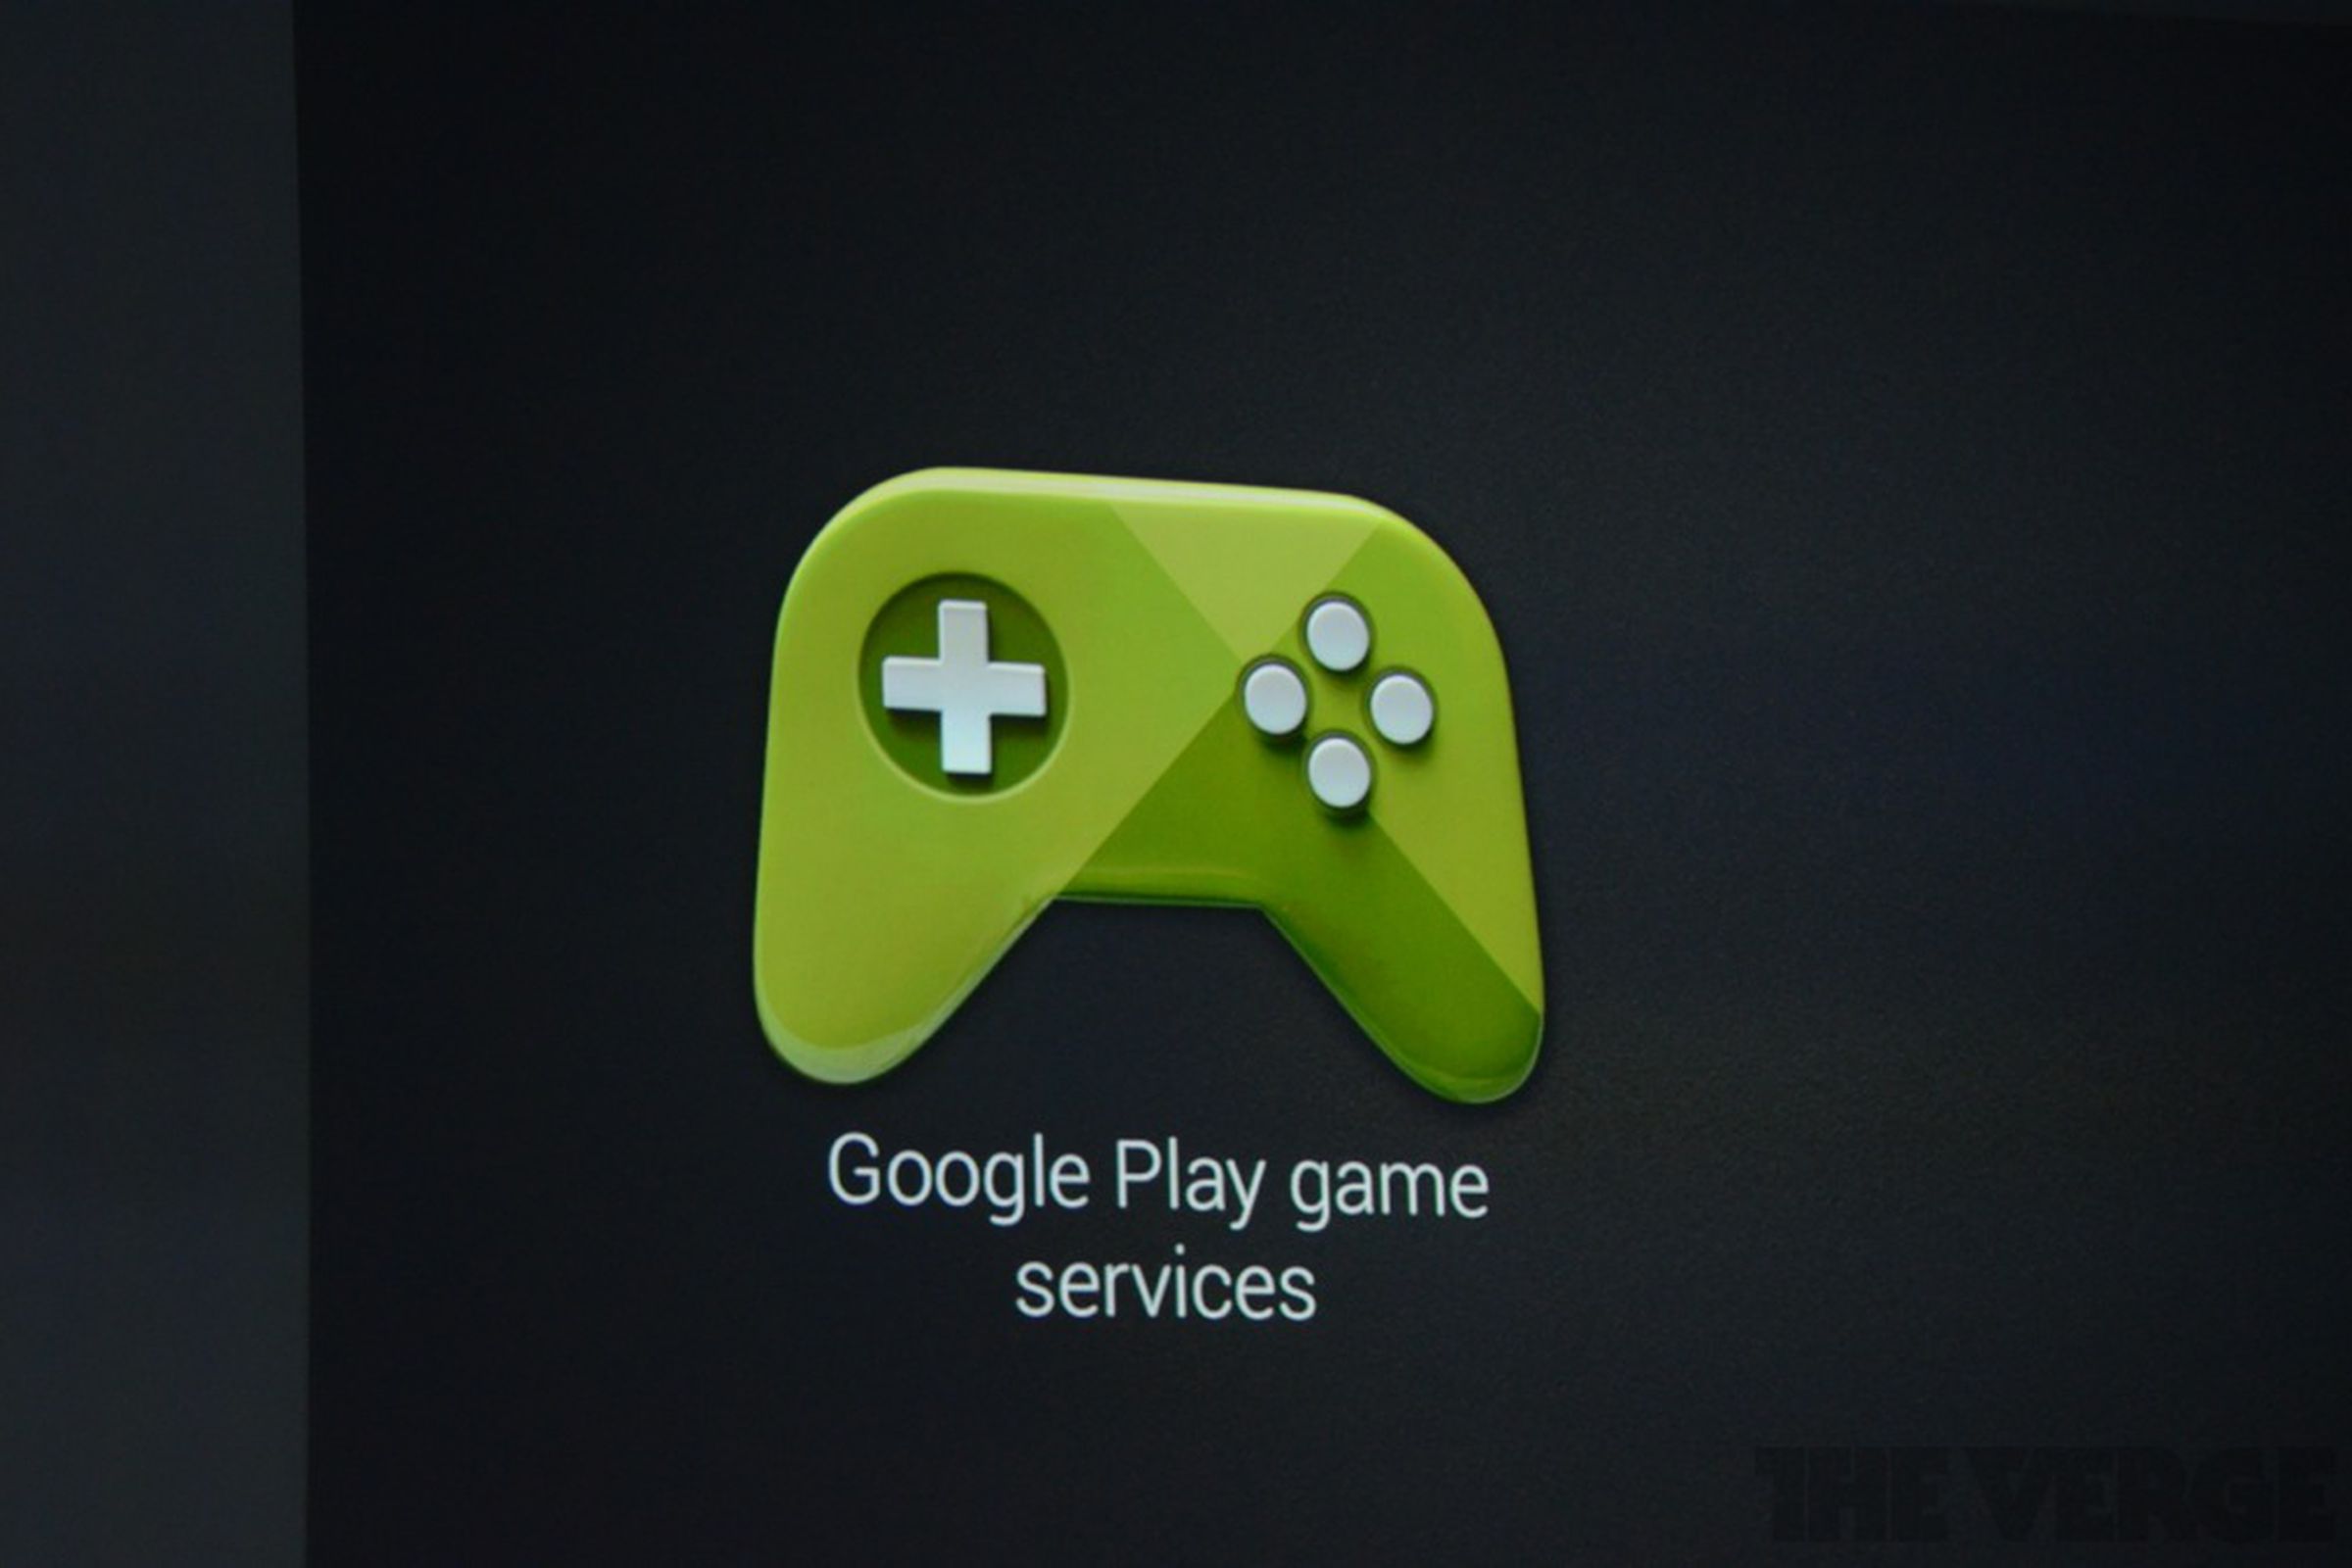 Новая игра гугл. Play игры. Google Play games. Гугл Play игры. Логотип гугл плей игры.